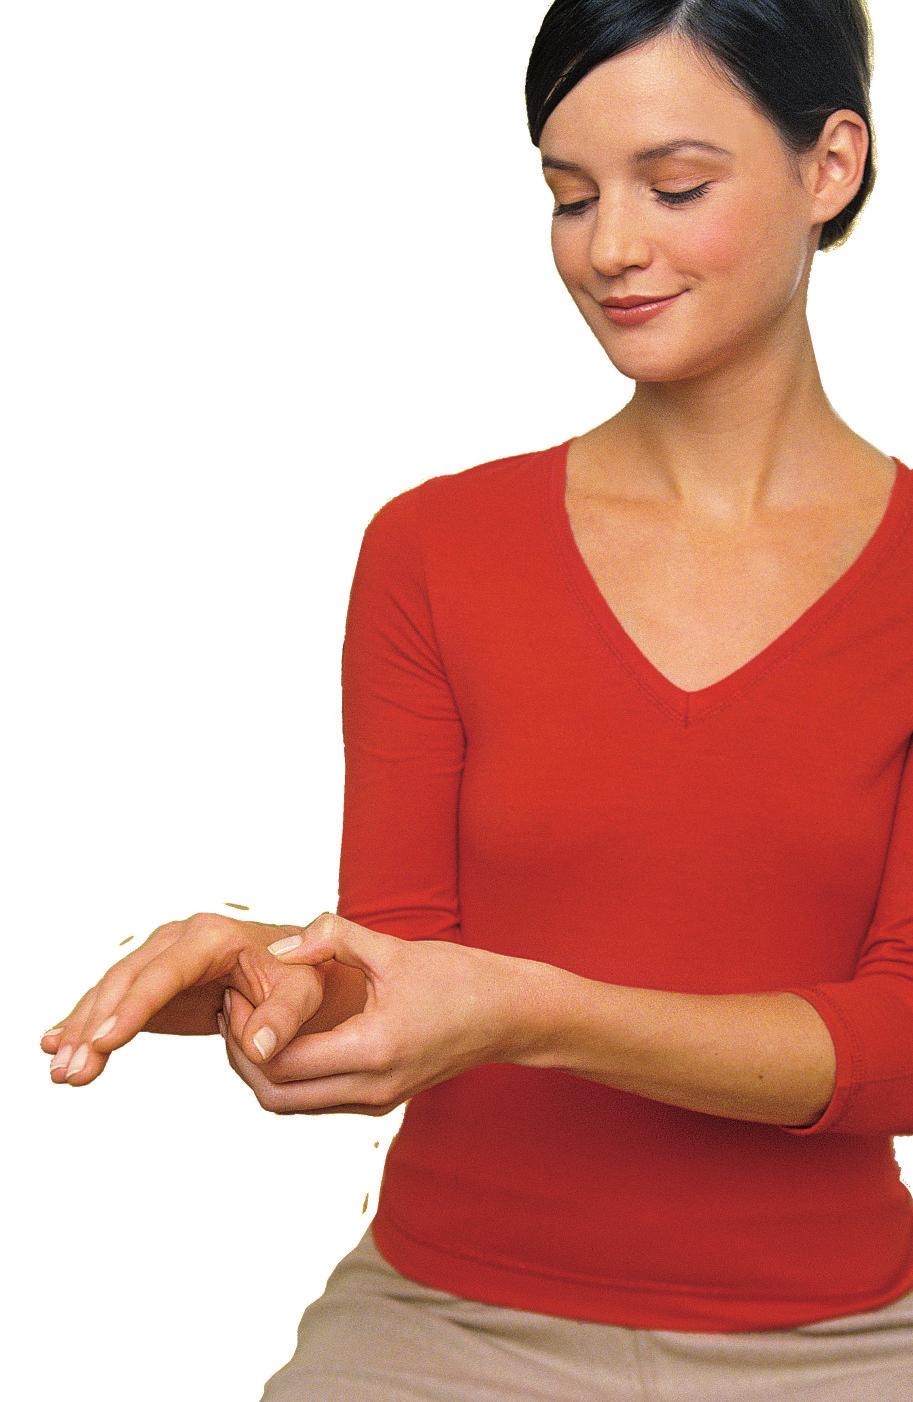 Alles, was Sie brauchen, sind Ihre Finger Patienten verspürten etwa bei einer täglichen Therapie mit der Druckpunkt-Massage nach einem Monat deutlich weniger Schmerzen im Lendenwirbel-Bereich als die